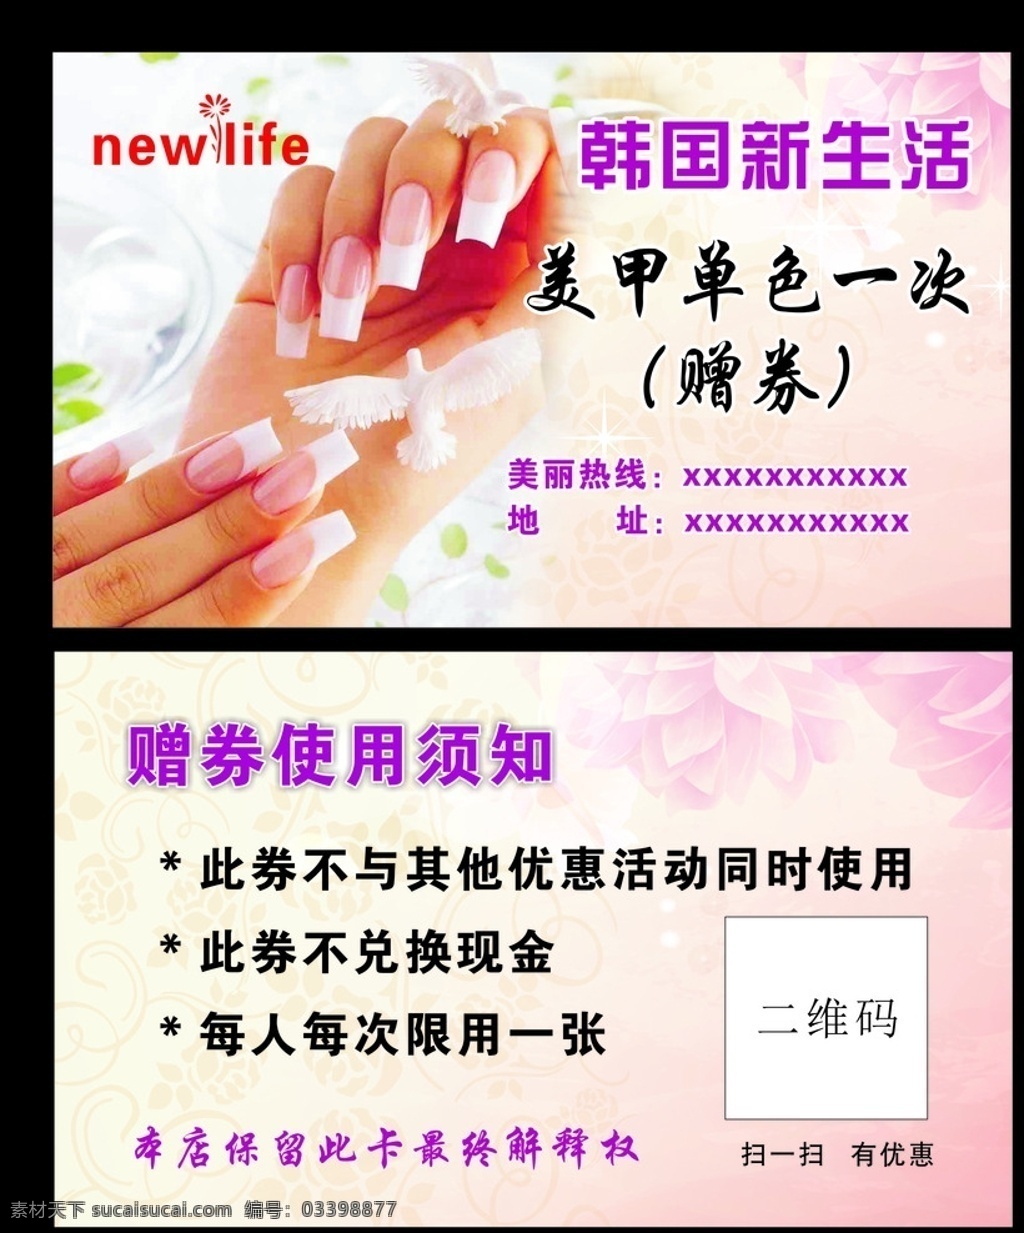 韩国新生活 名片 新生活标志 新生活 新生活名片 名片卡片 手指甲美甲 粉红色背景 矢量